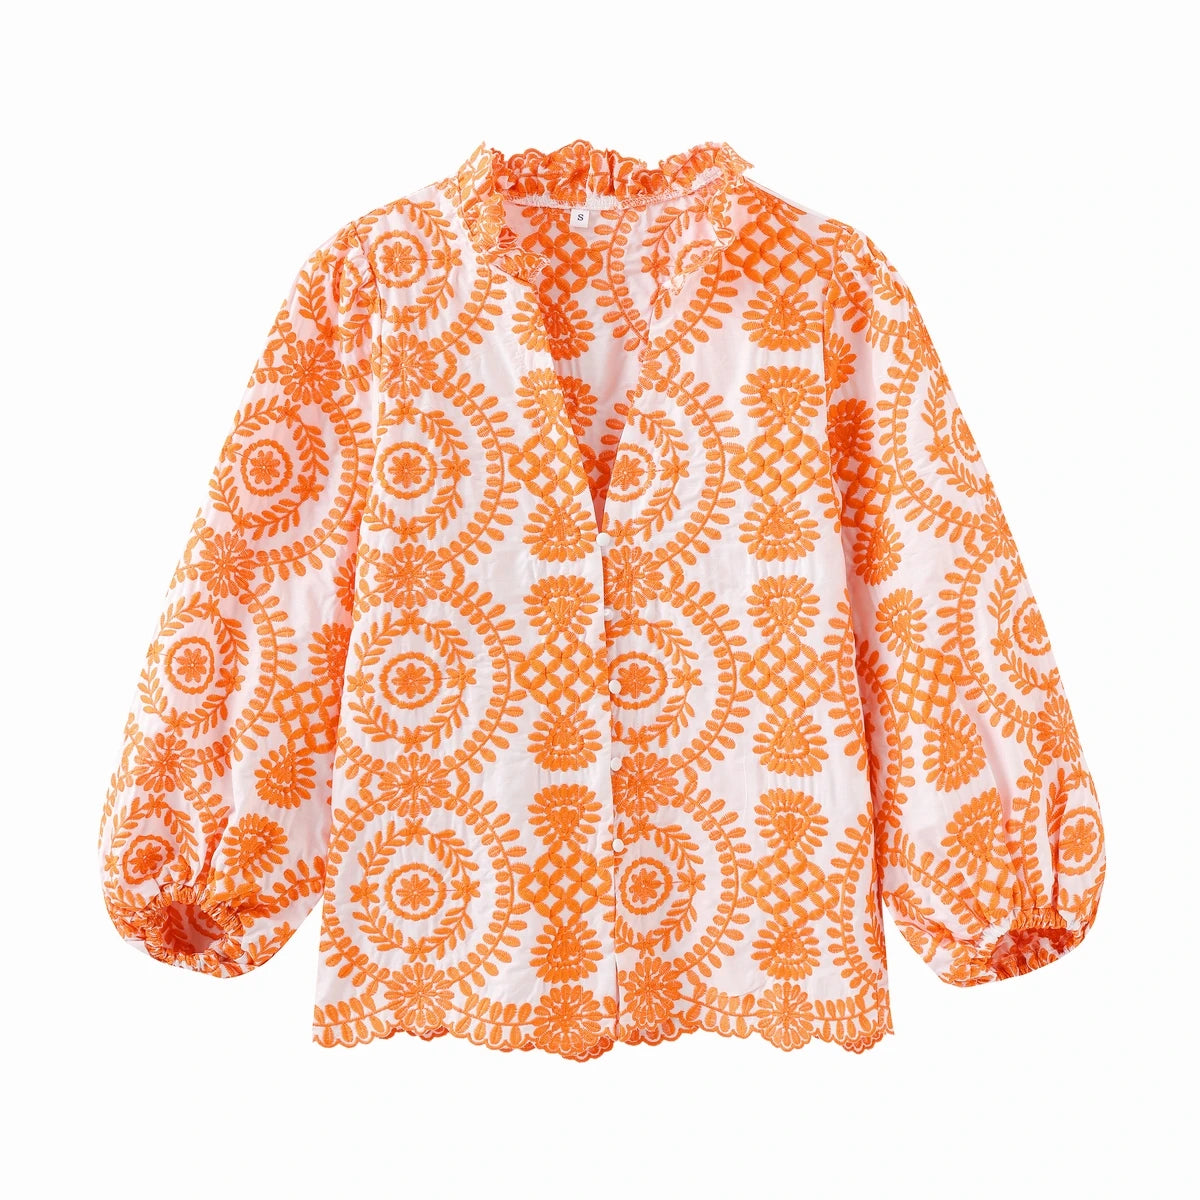 TEEK - Emma Embroidered Blouse TOPS theteekdotcom Orange S 